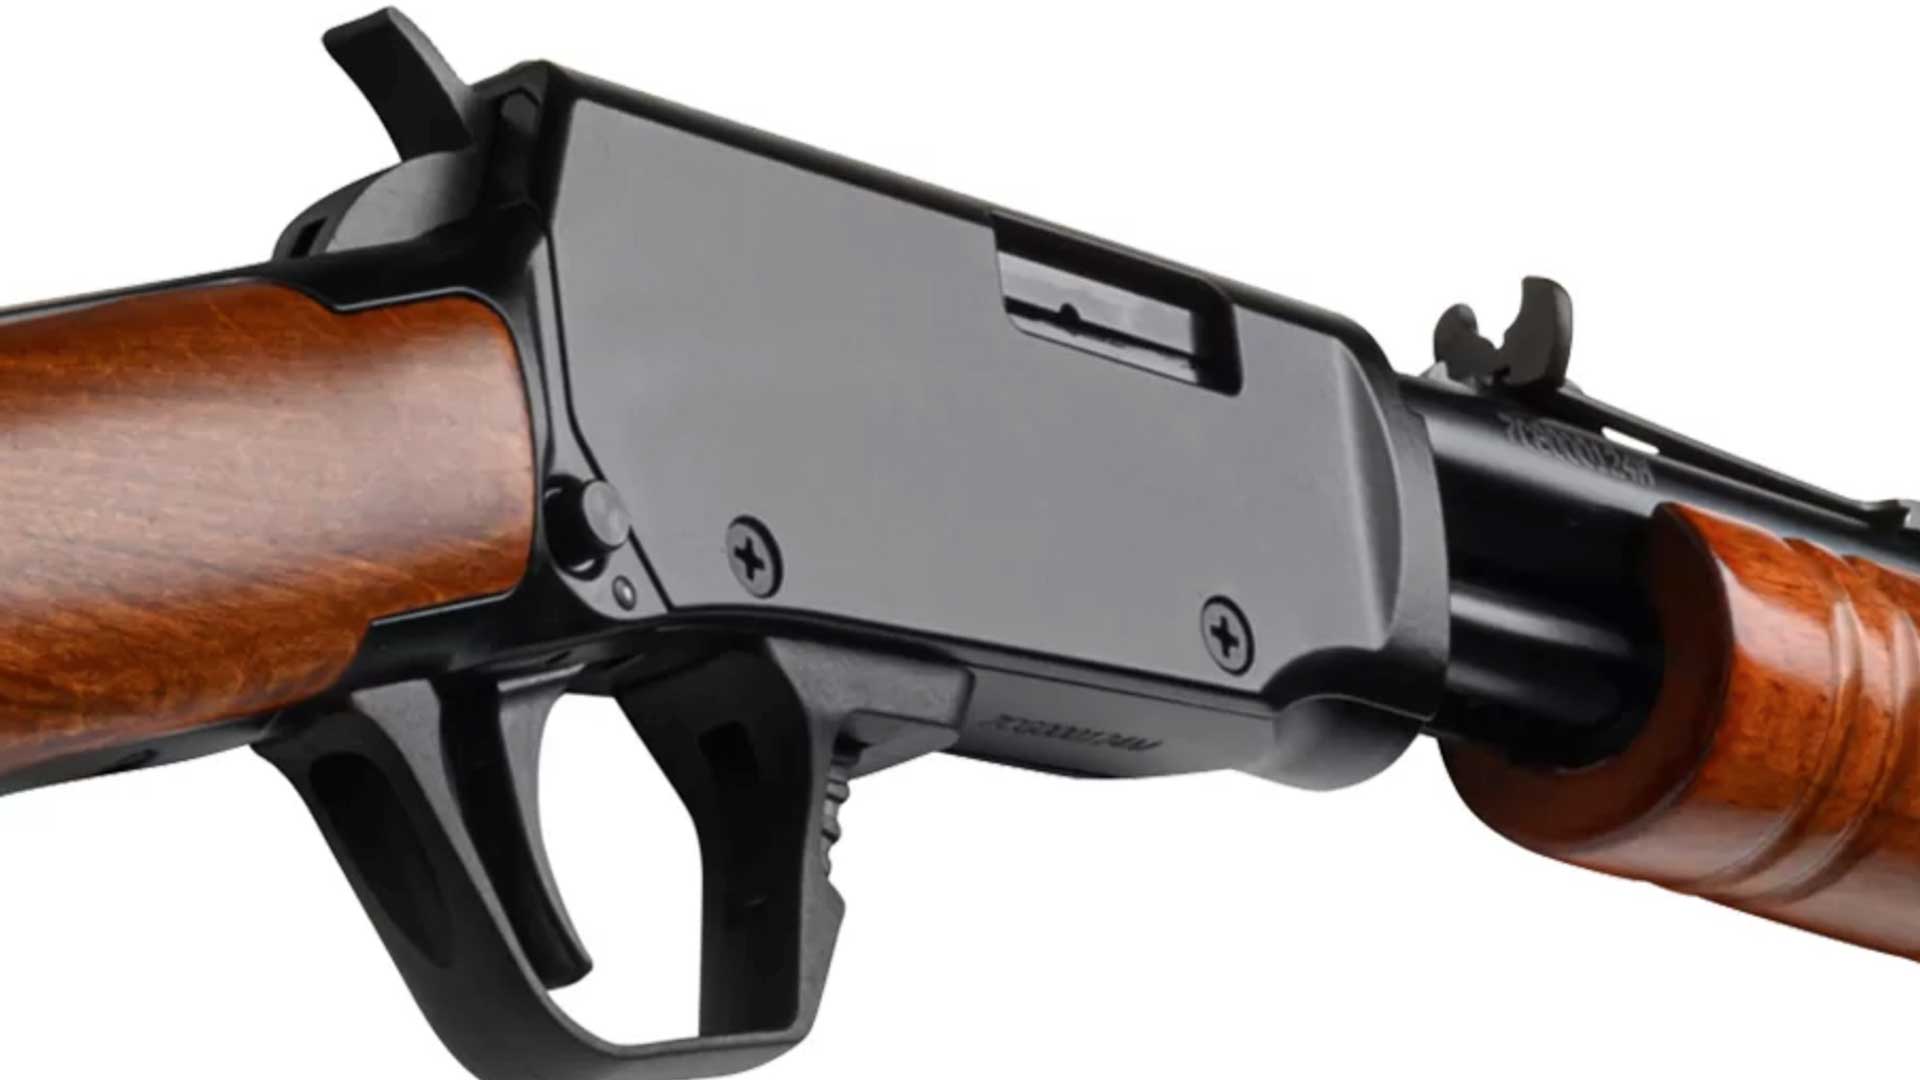 gun rifle black receiver metal brown wood